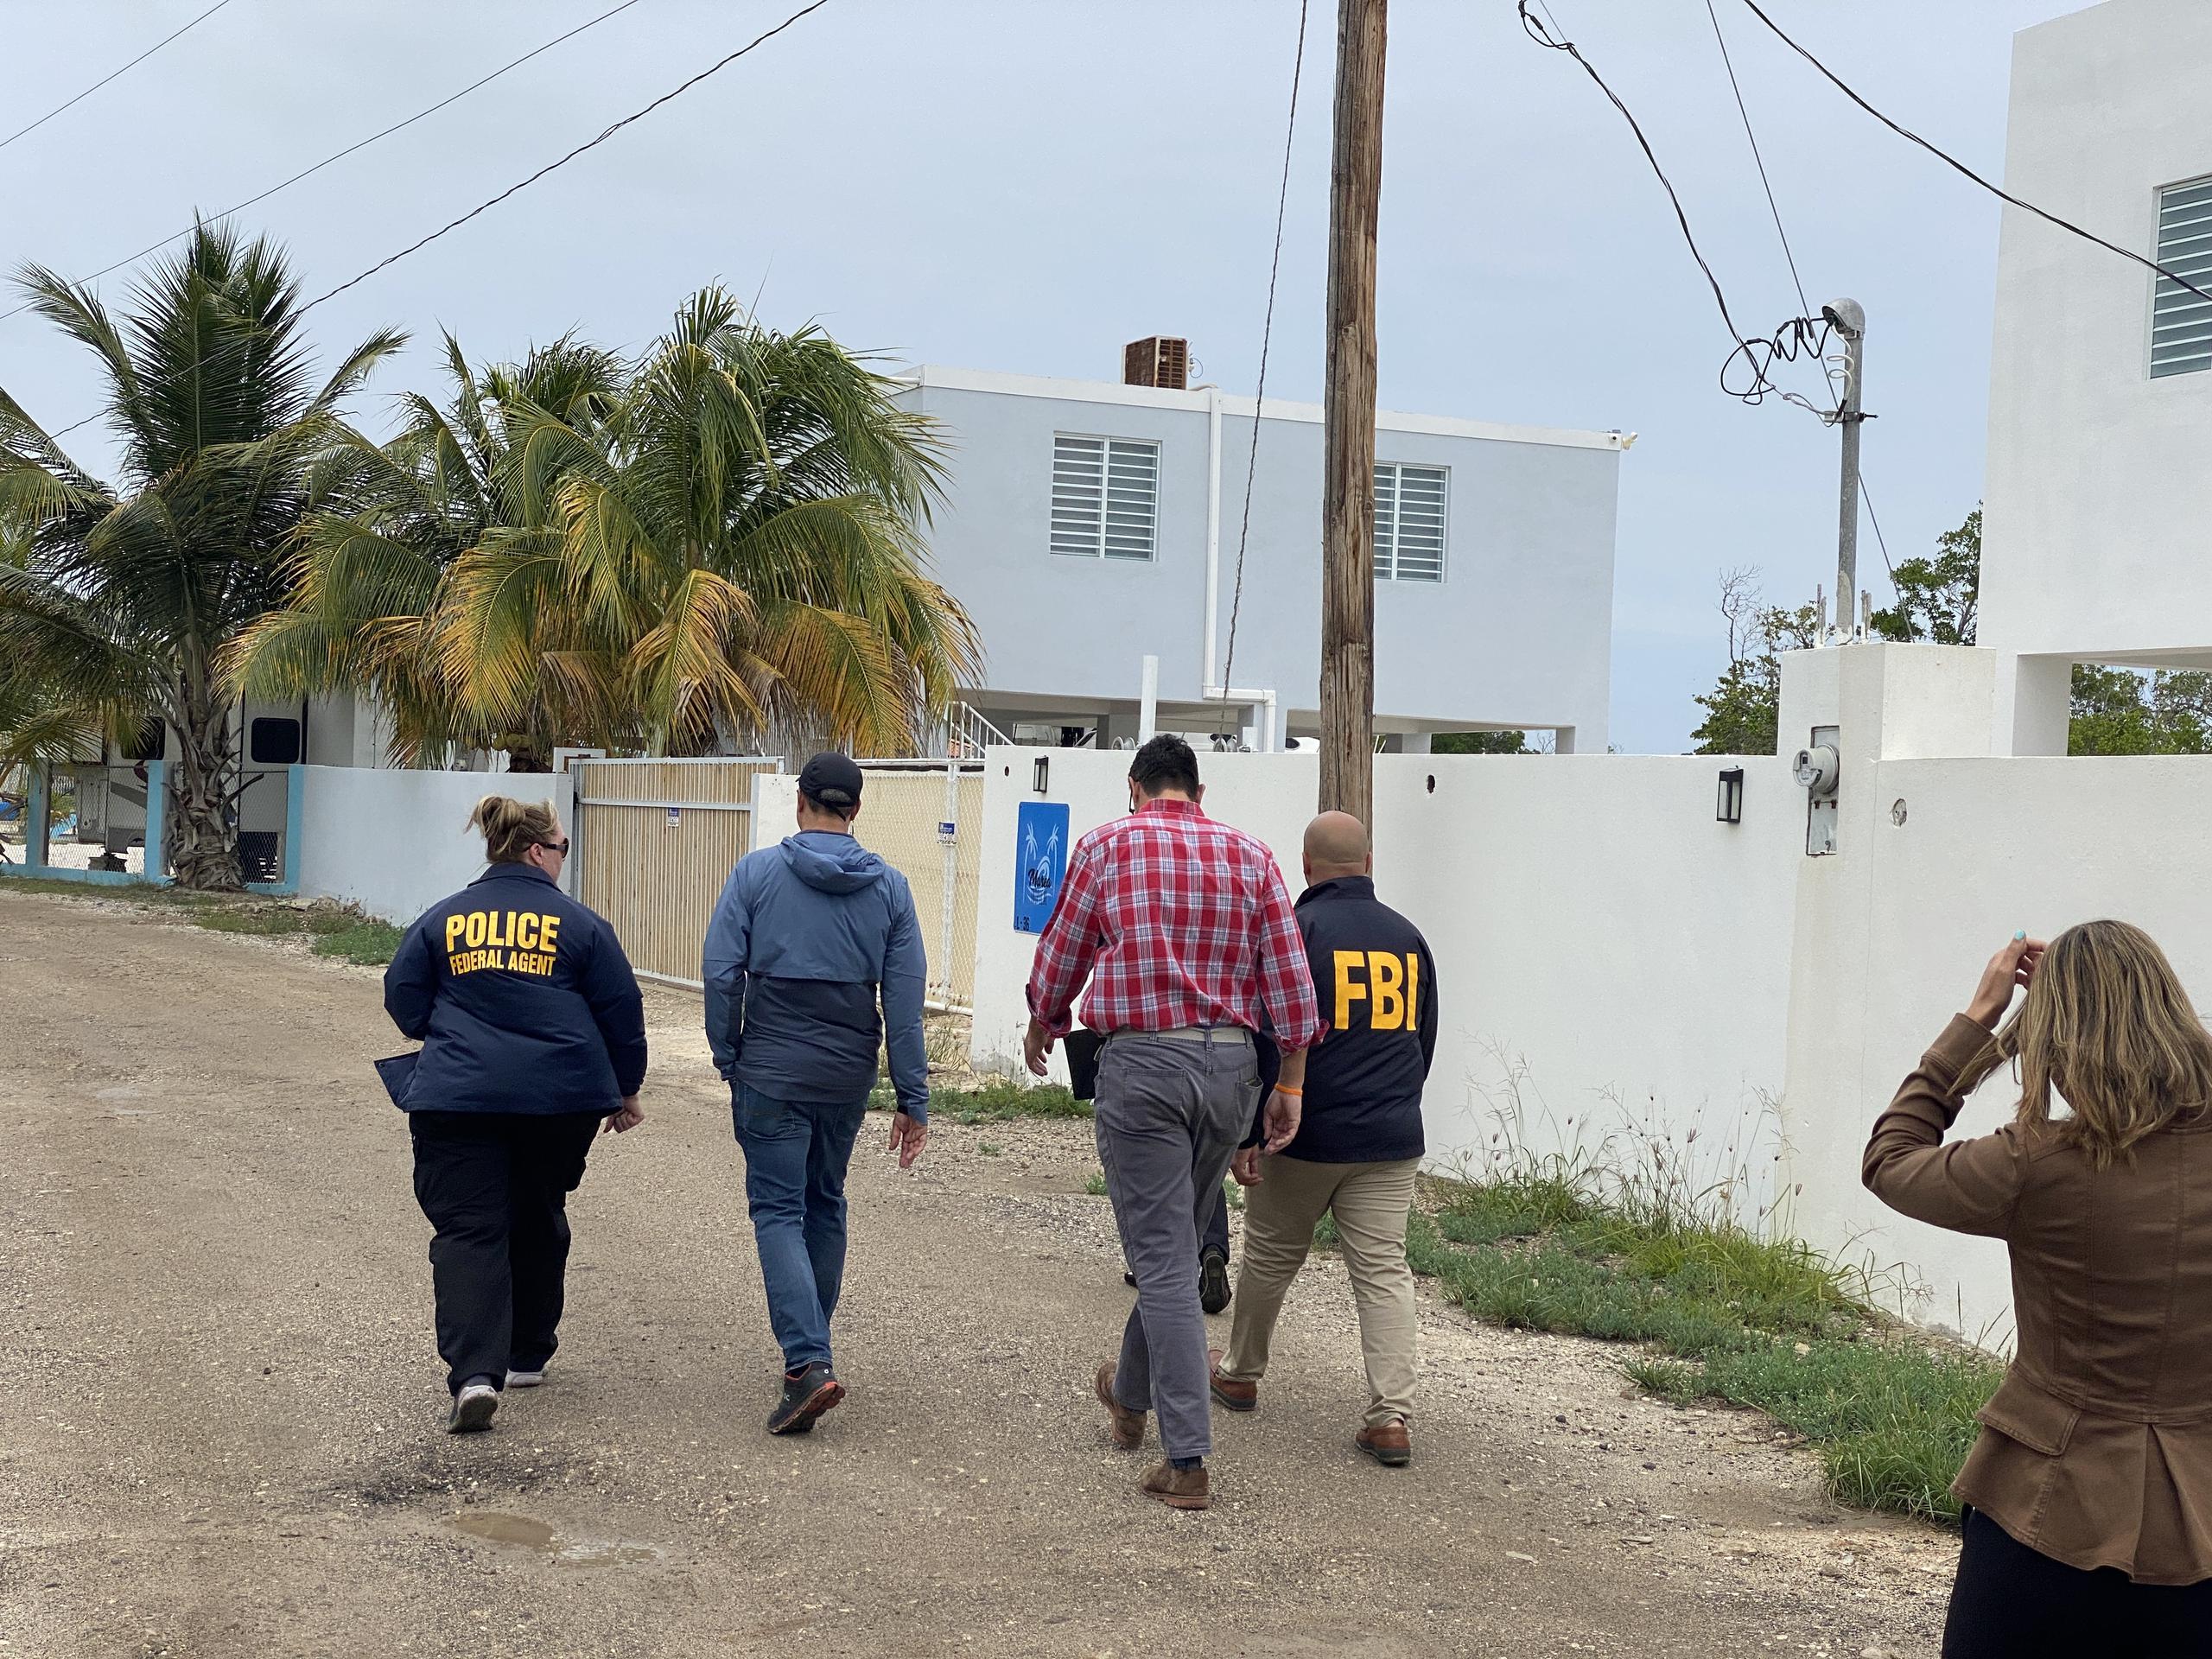 Oficiales de la Fiscalía federal, el FBI y otras agencias inspeccionan los terrenos invadidos en la Reserva Natural de la Bahía Jobos, en Salinas. (alex.figueroa@gfrmedia.com)